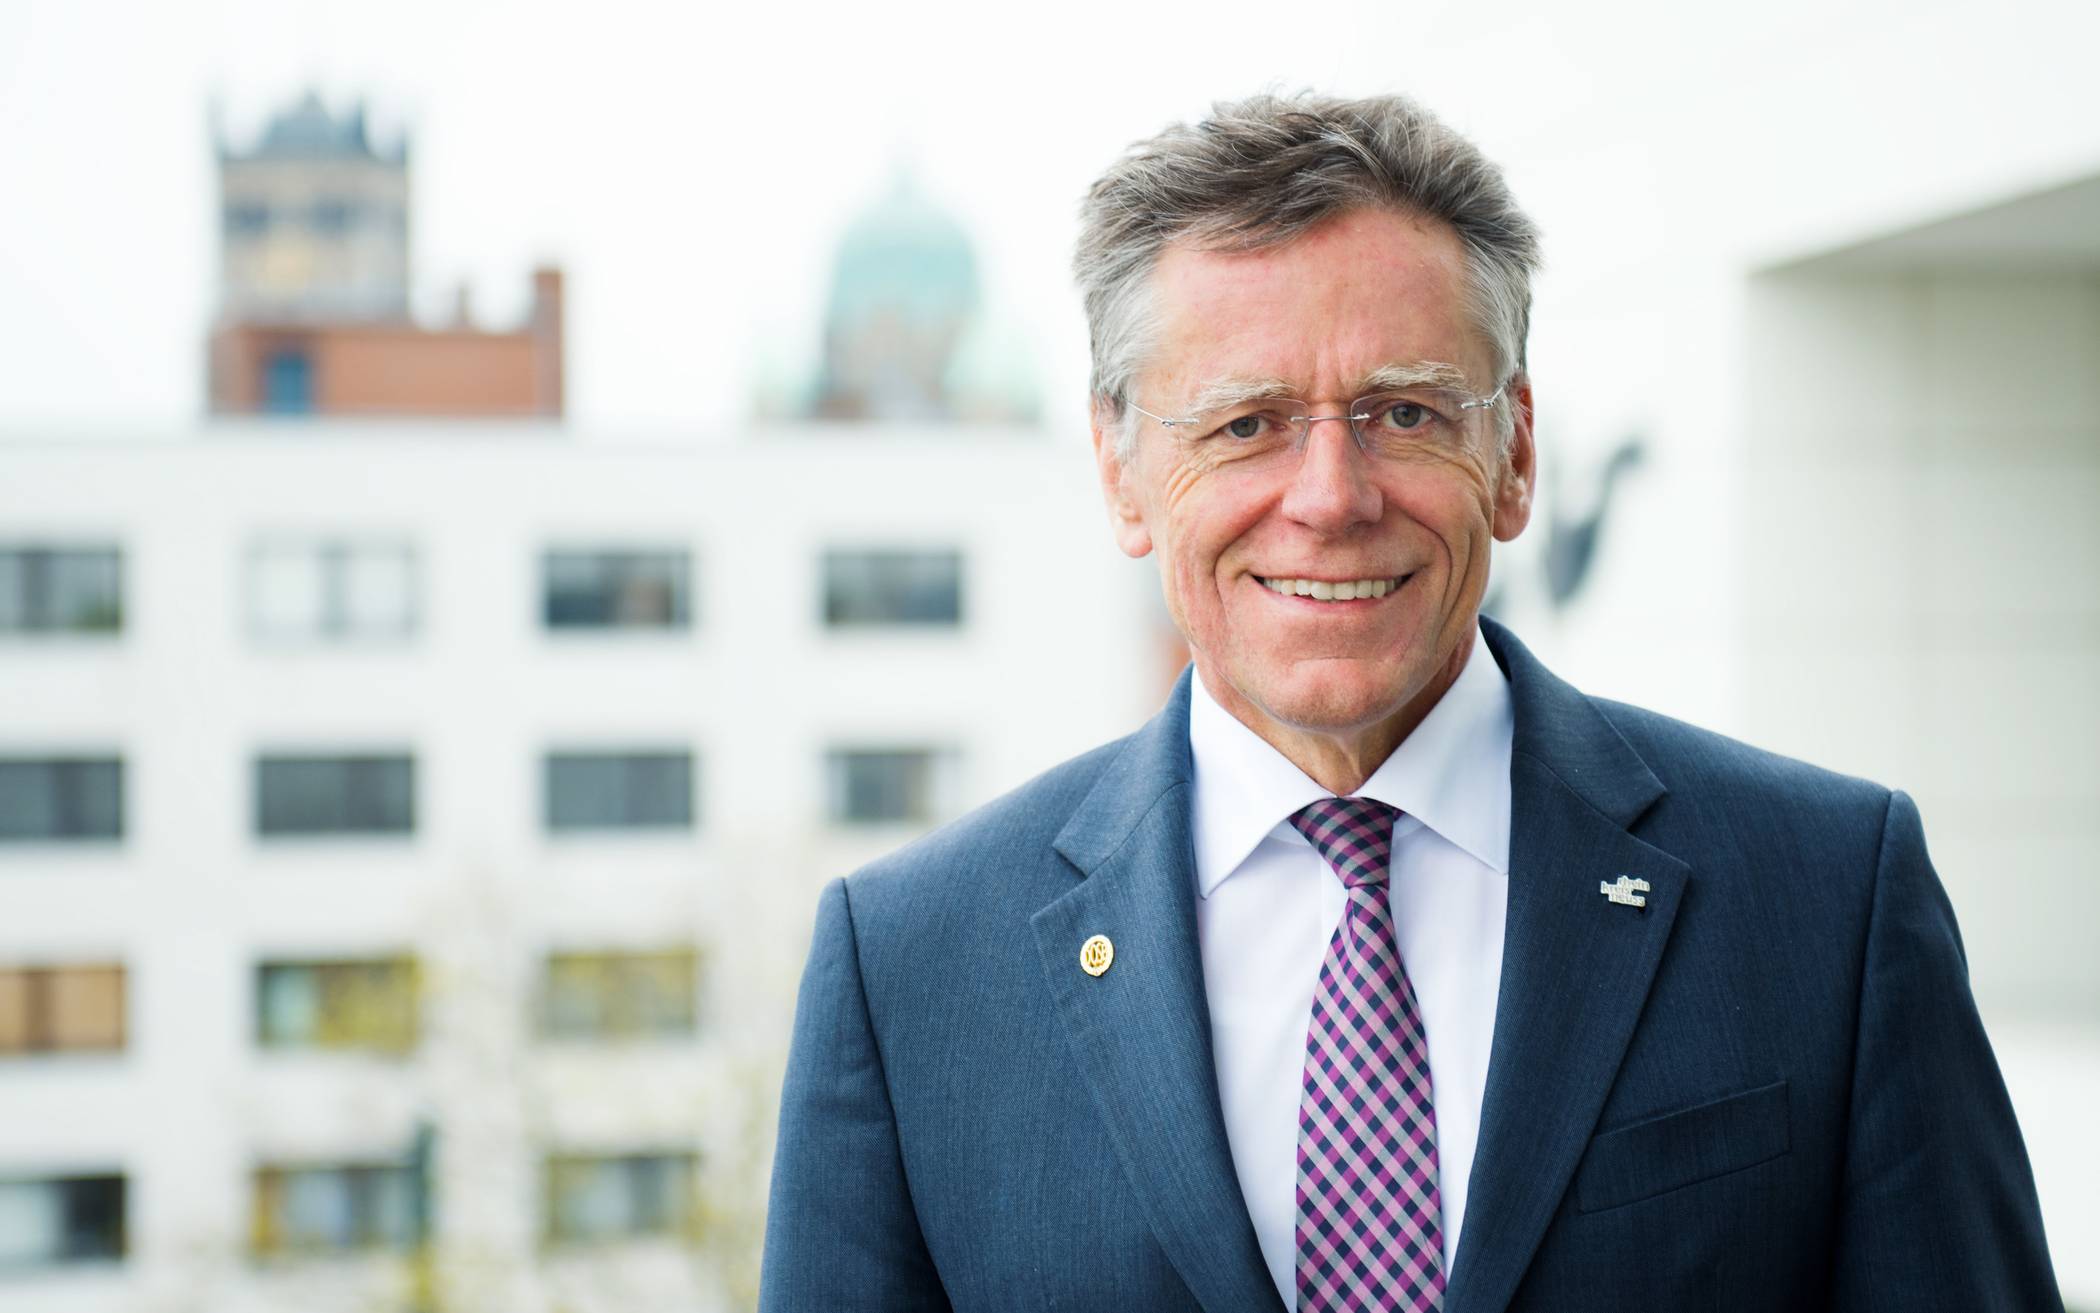  Landrat Hans-Jürgen Petrauschke setzt sich für Verbesserungen bei der S8 ein 